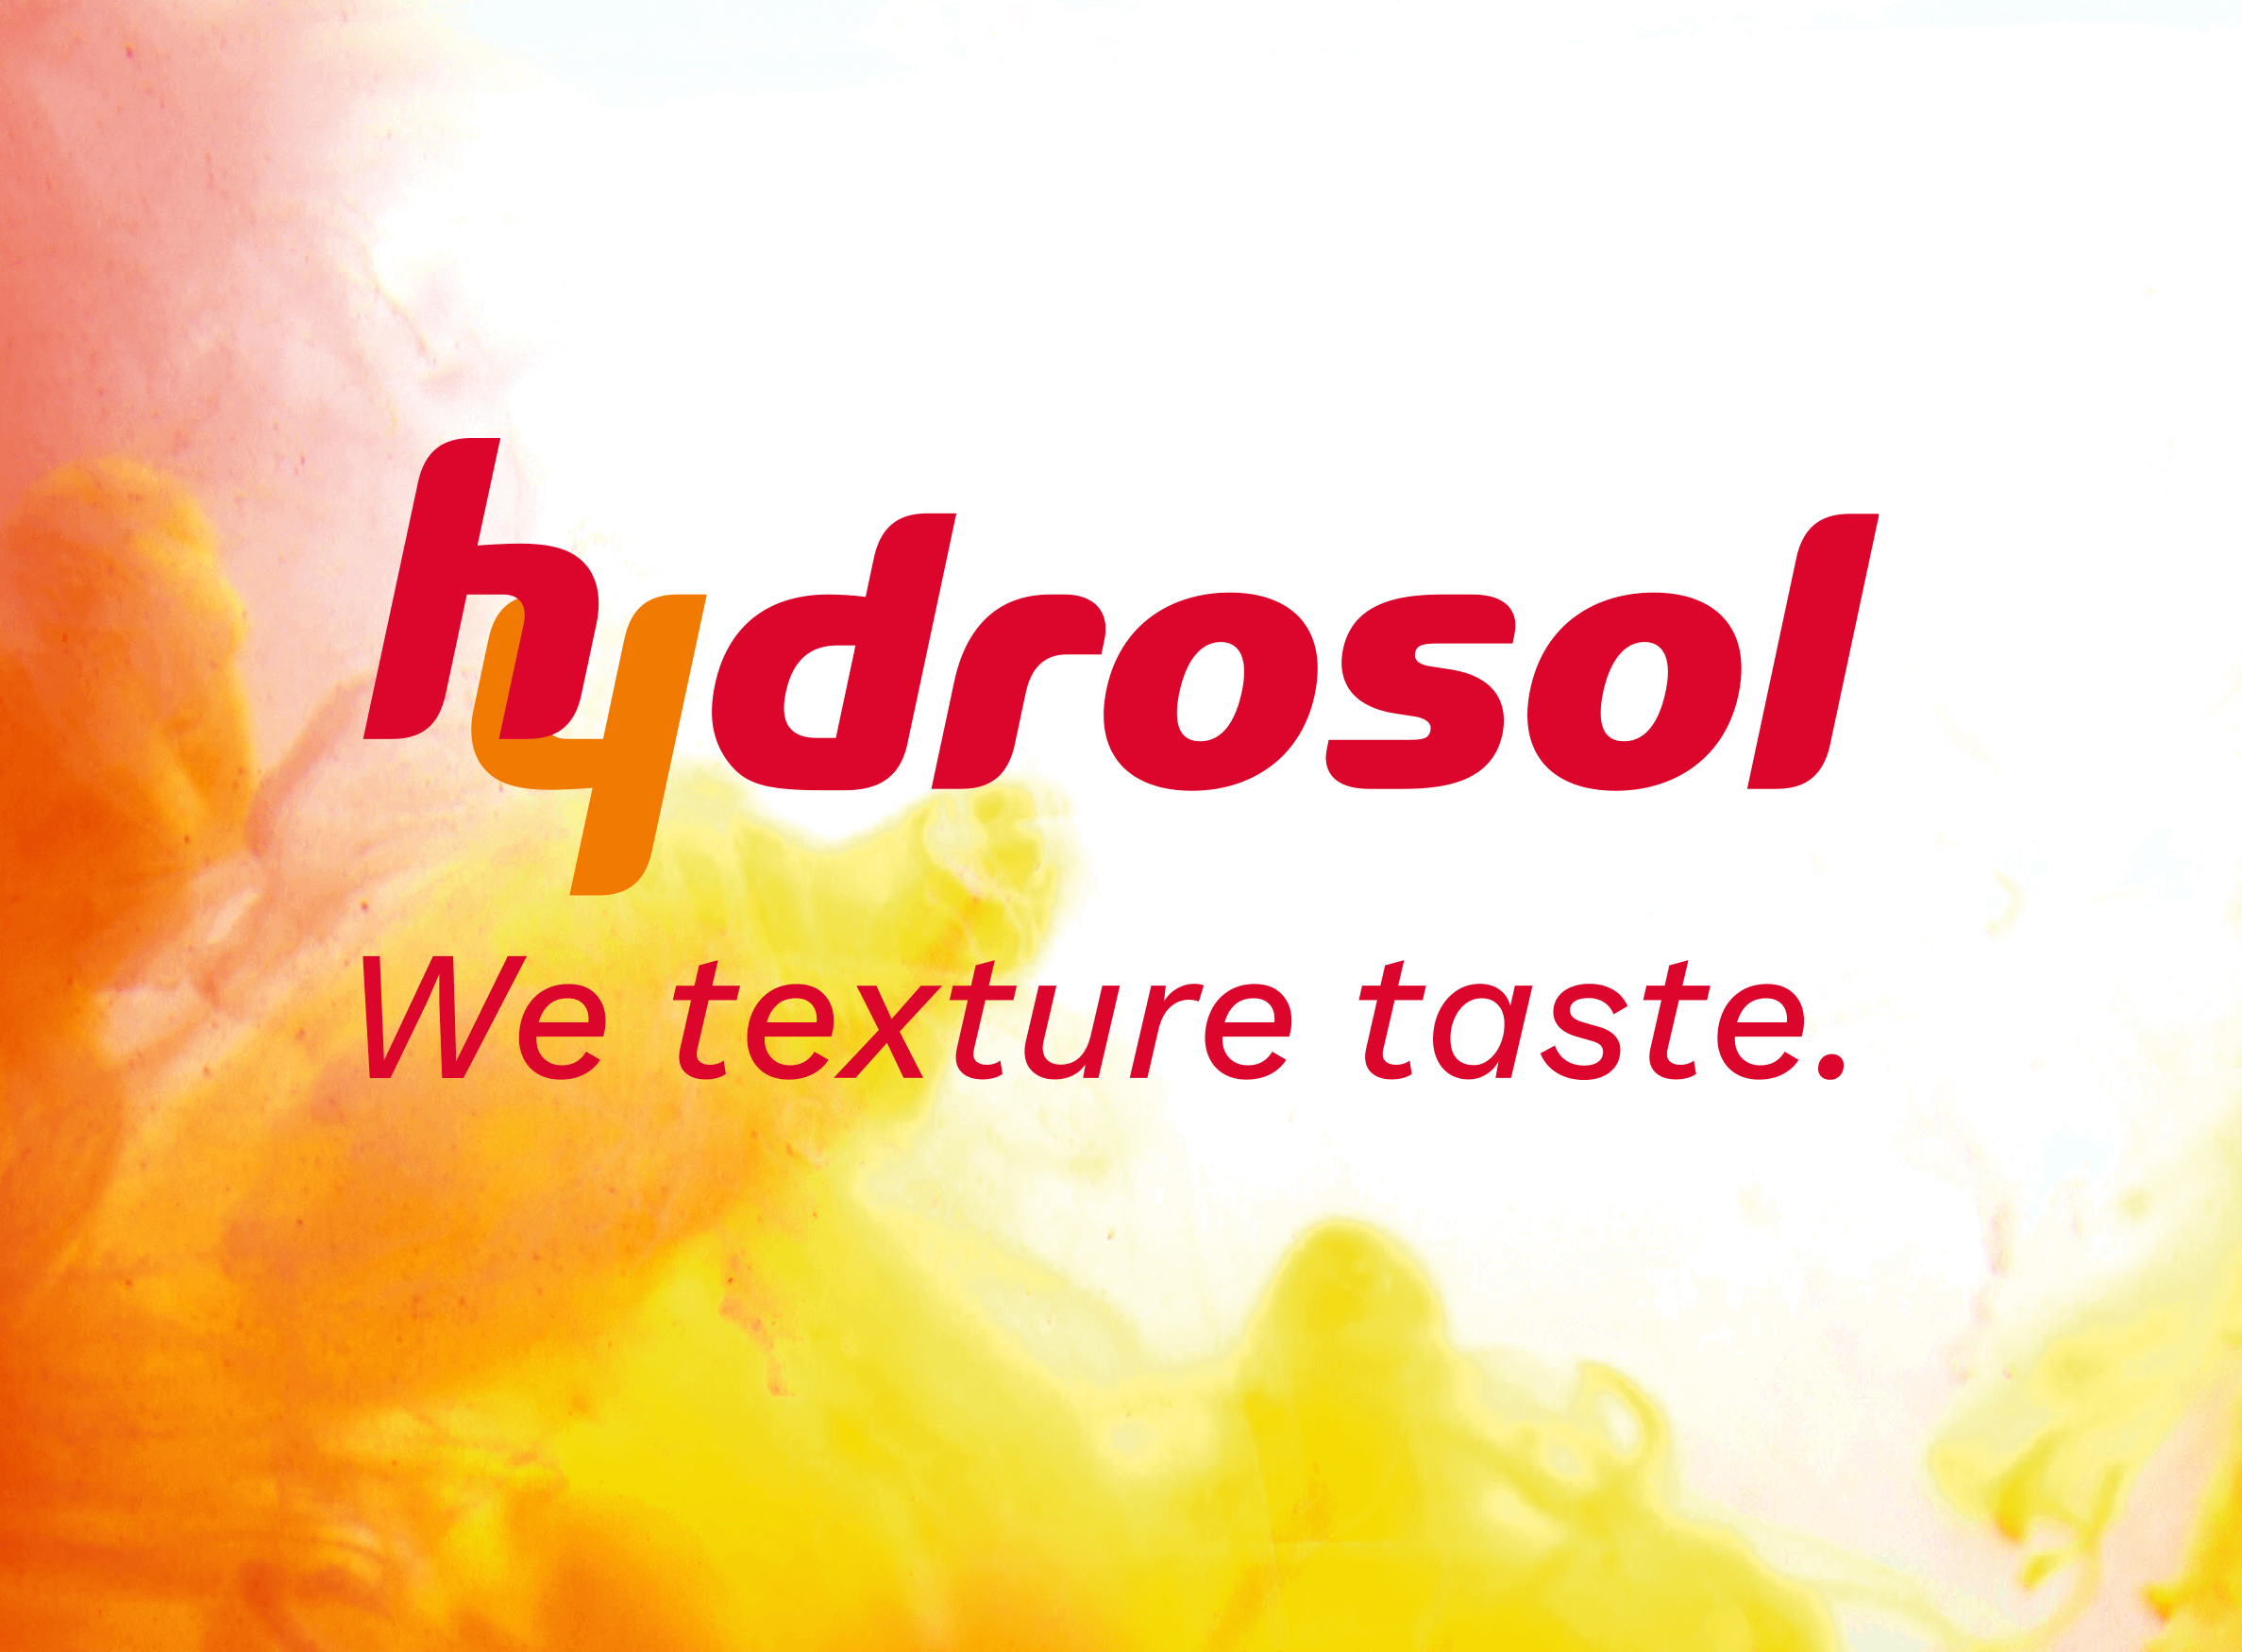 hydrosol-corporate-design